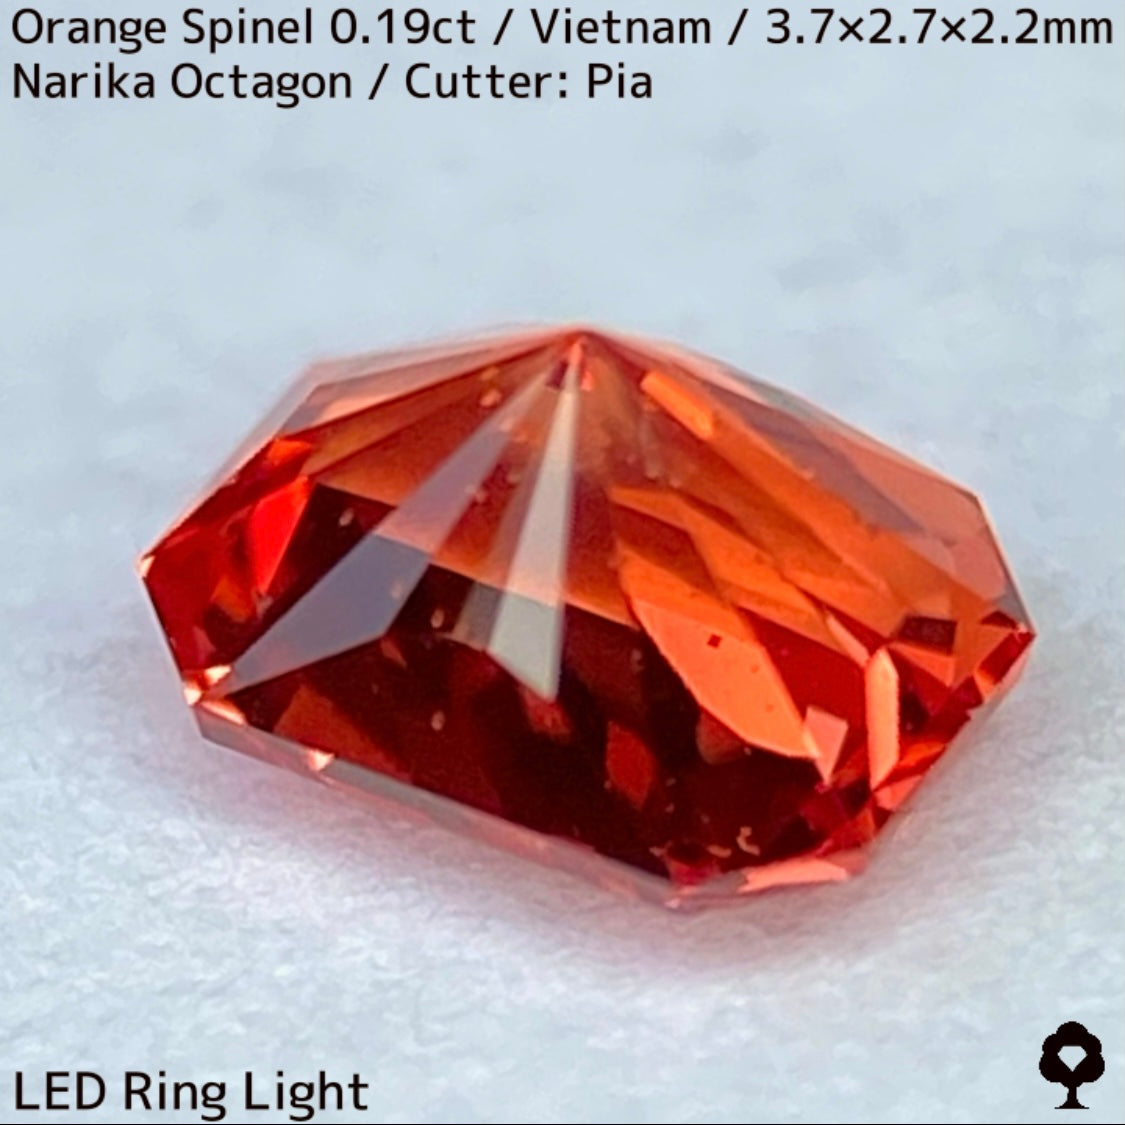 ベトナム産オレンジスピネル0.19ct★ネオンオレンジ美しいナリカーの鋭い煌めきのバブリー結晶